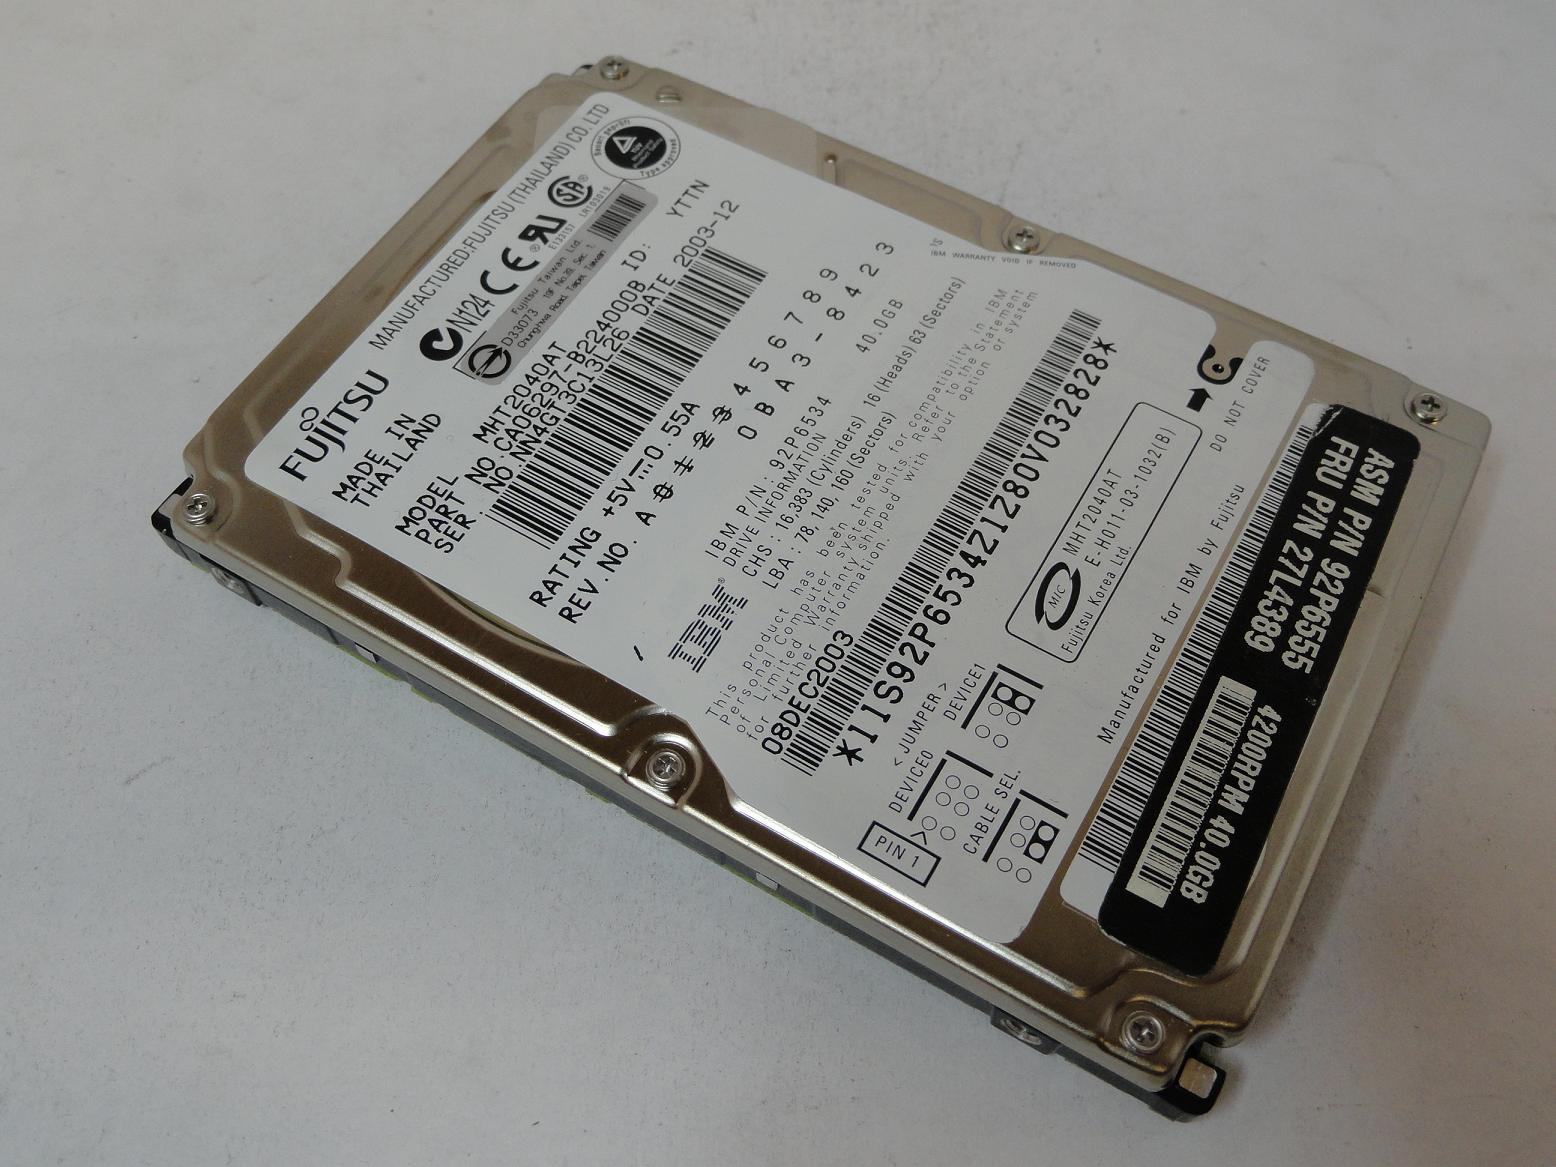 CA06297-B224000B - Fujitsu IBM 40GB IDE 4200rpm 2.5in HDD - Refurbished